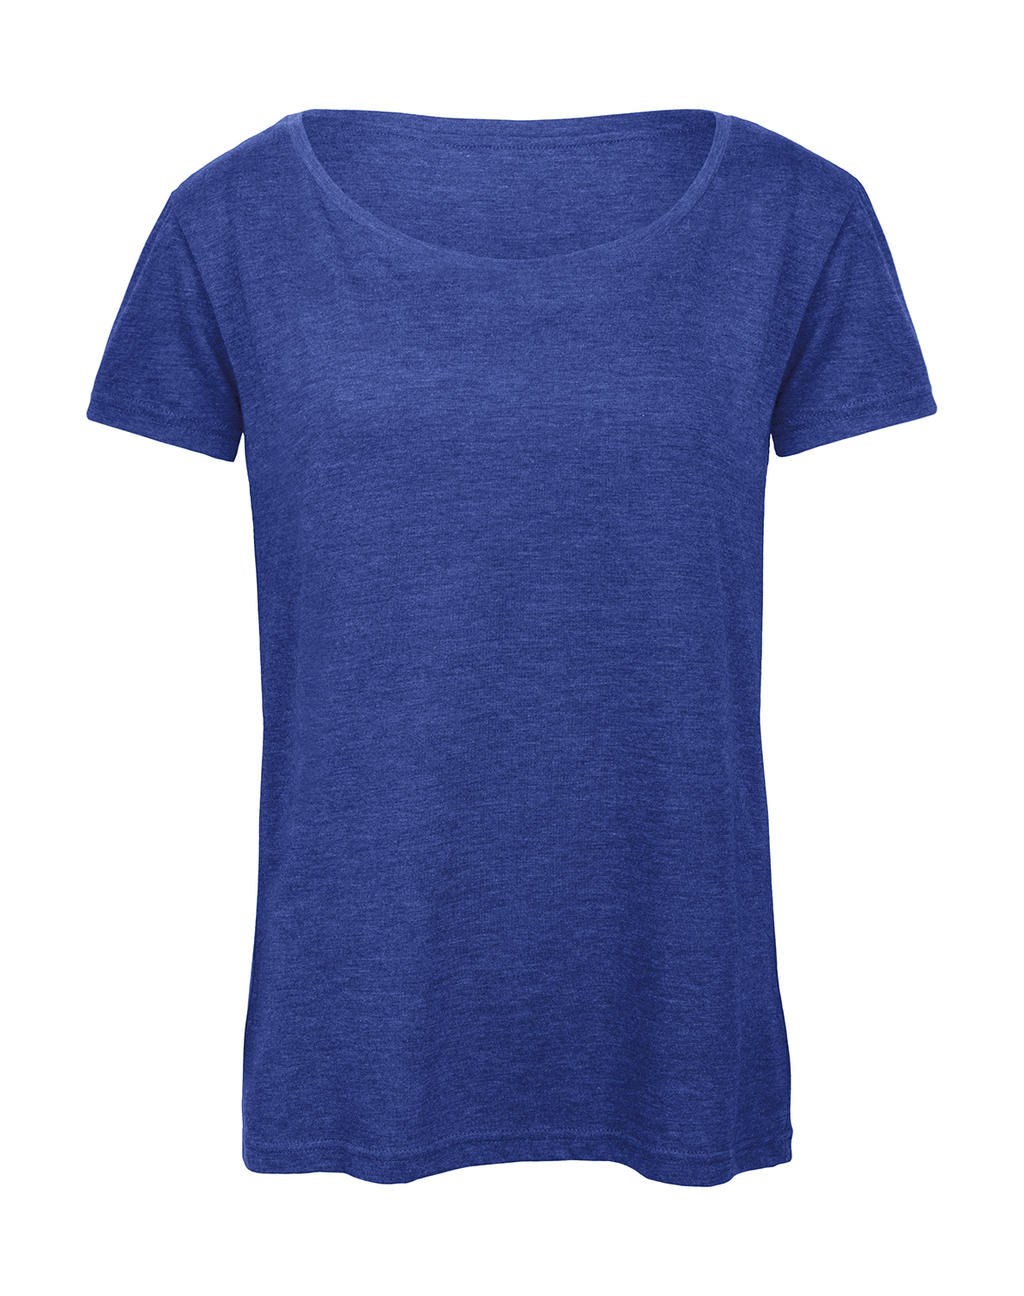 Dámske tričko Triblend/women - heather royal blue